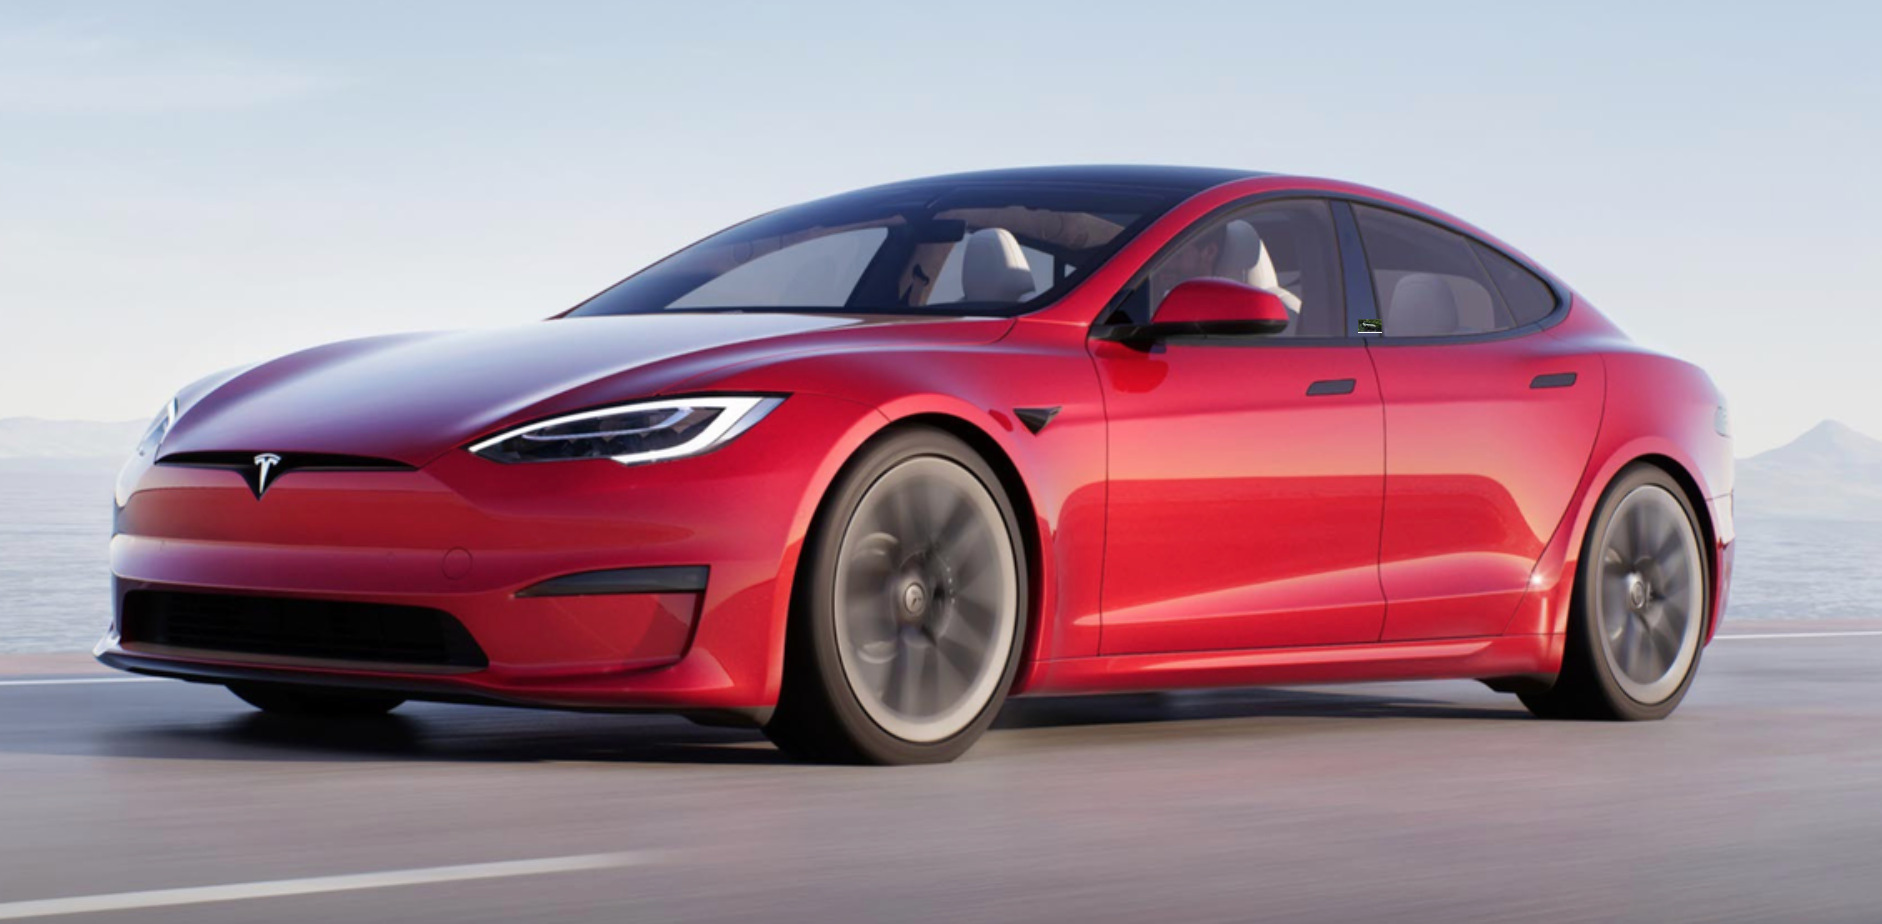 Borne de recharge Tesla Model 3, comment choisir? - My Electricity